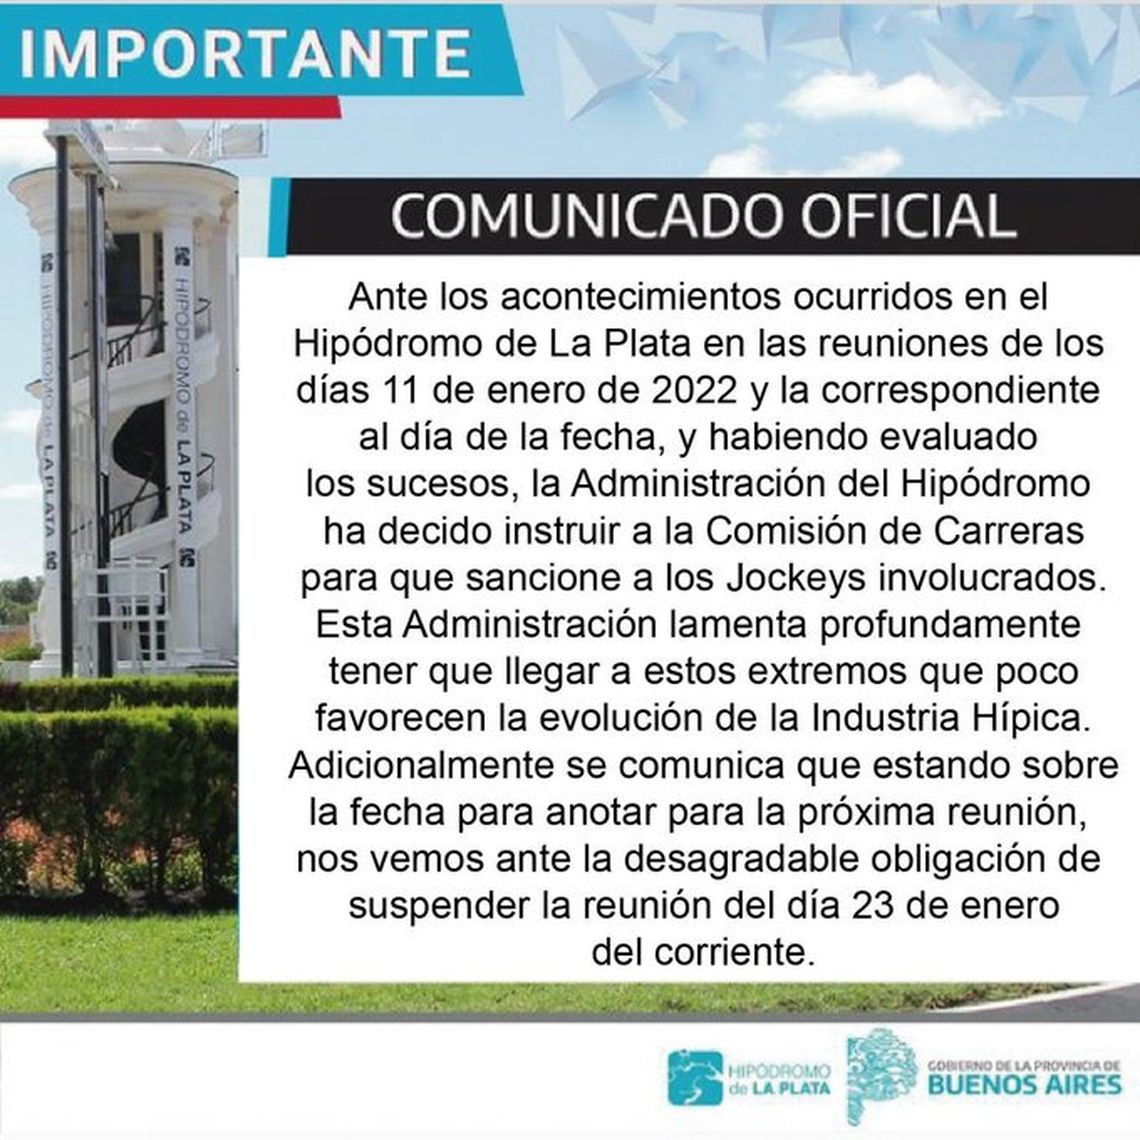 La Plata suspendió la reunión del jueves y la del domingo